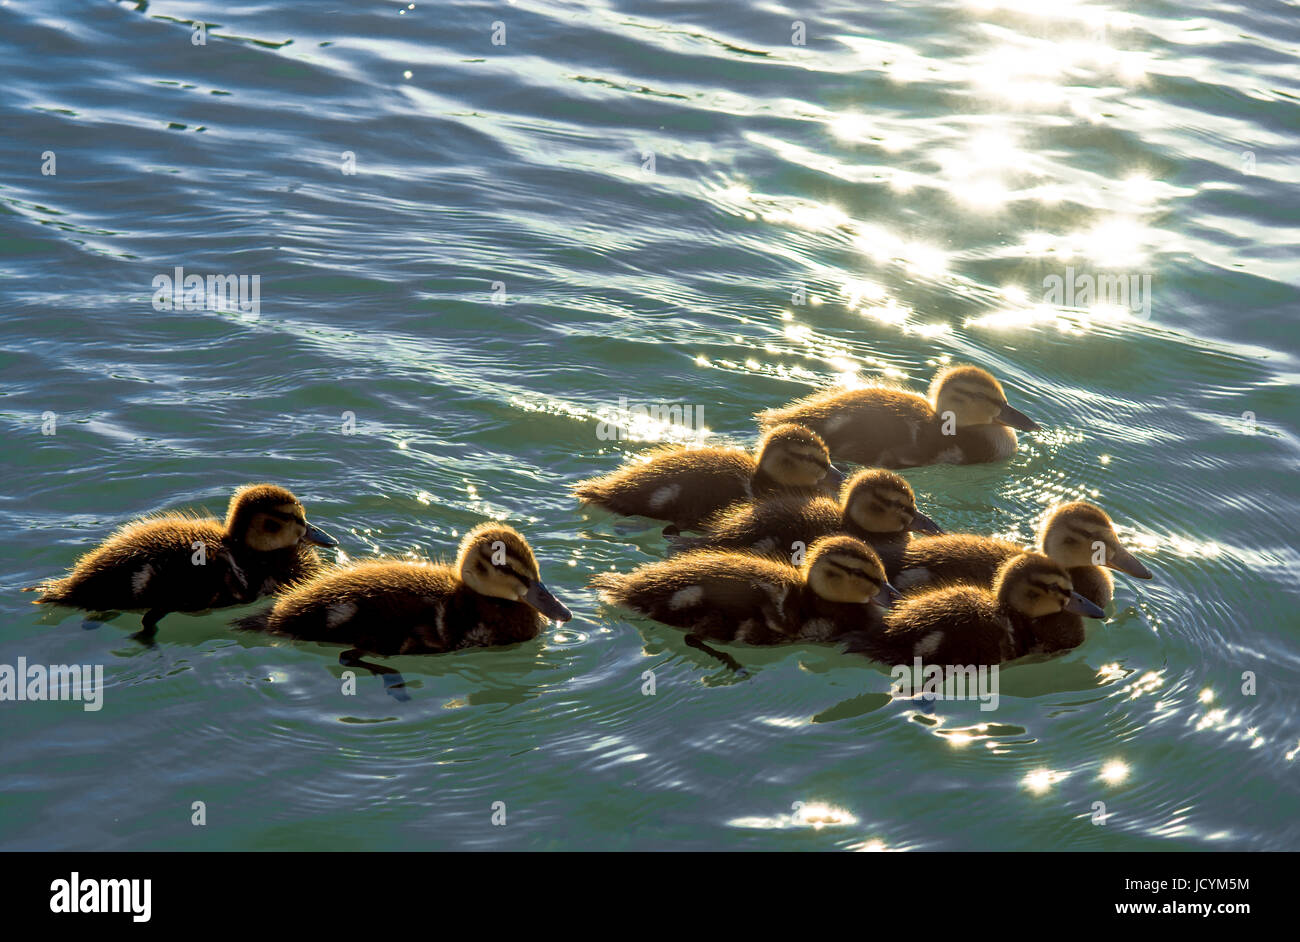 Gruppe von Ente Hühner Schwimmen im Wasser Stockfotografie - Alamy